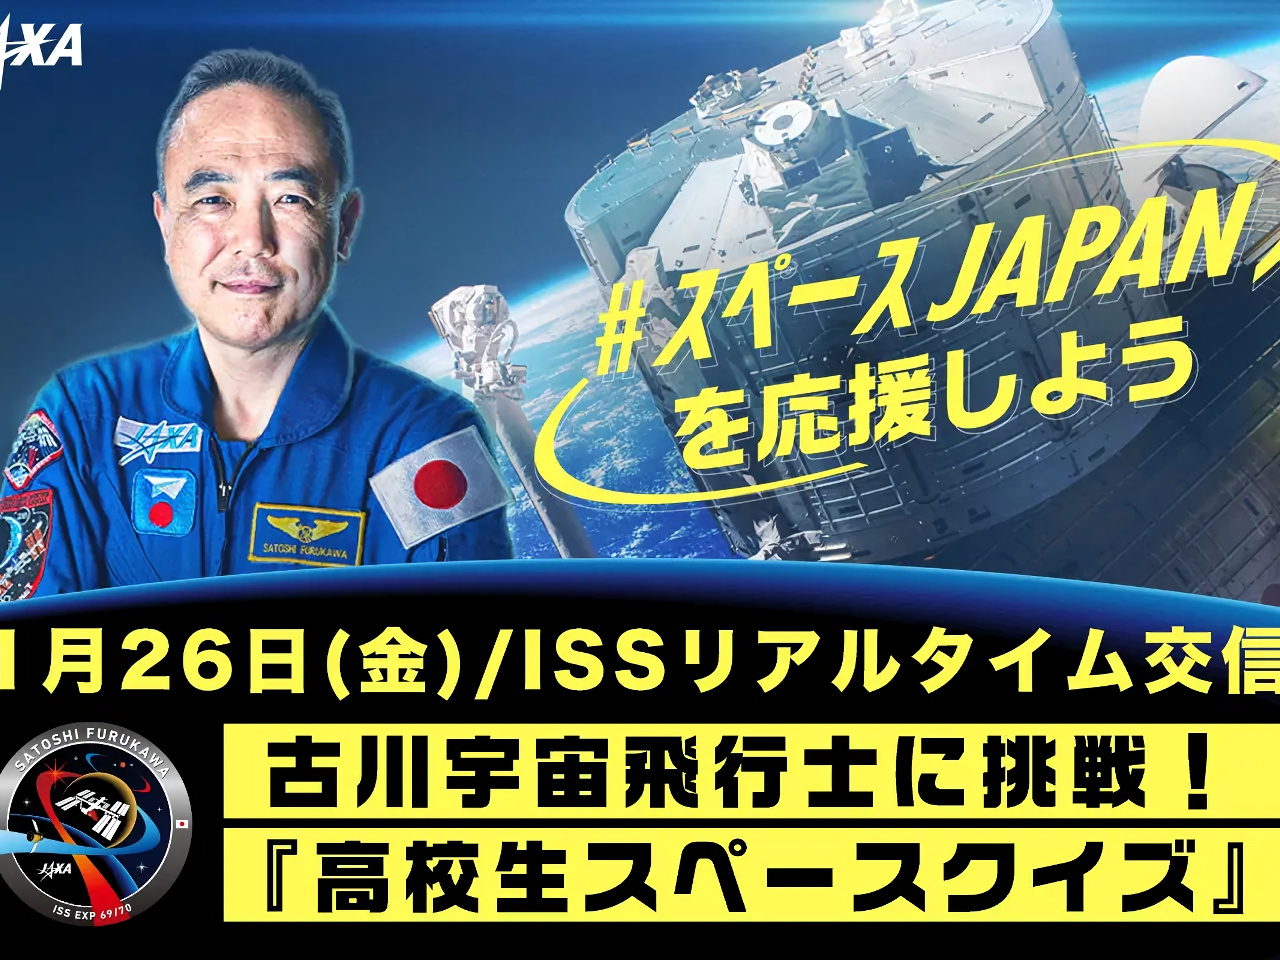 古川聡宇宙飛行士のクイズに高校生が挑む--ISSとリアルタイム交信、1月26日に配信